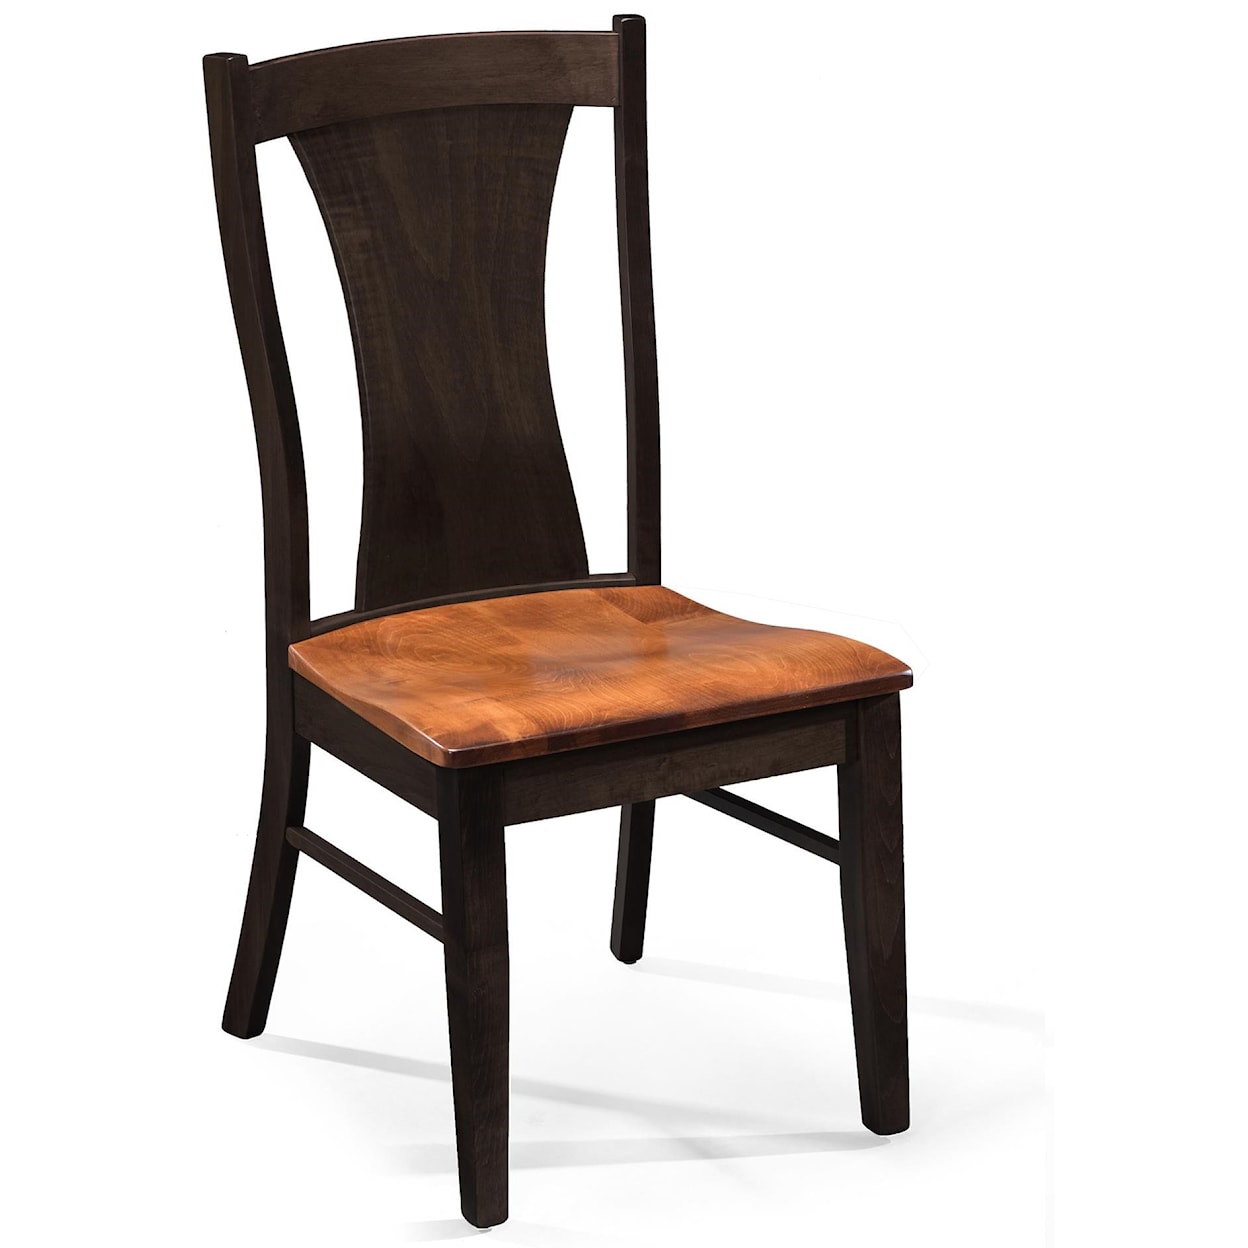 Archbold Furniture Amish Essentials Samuel Chair